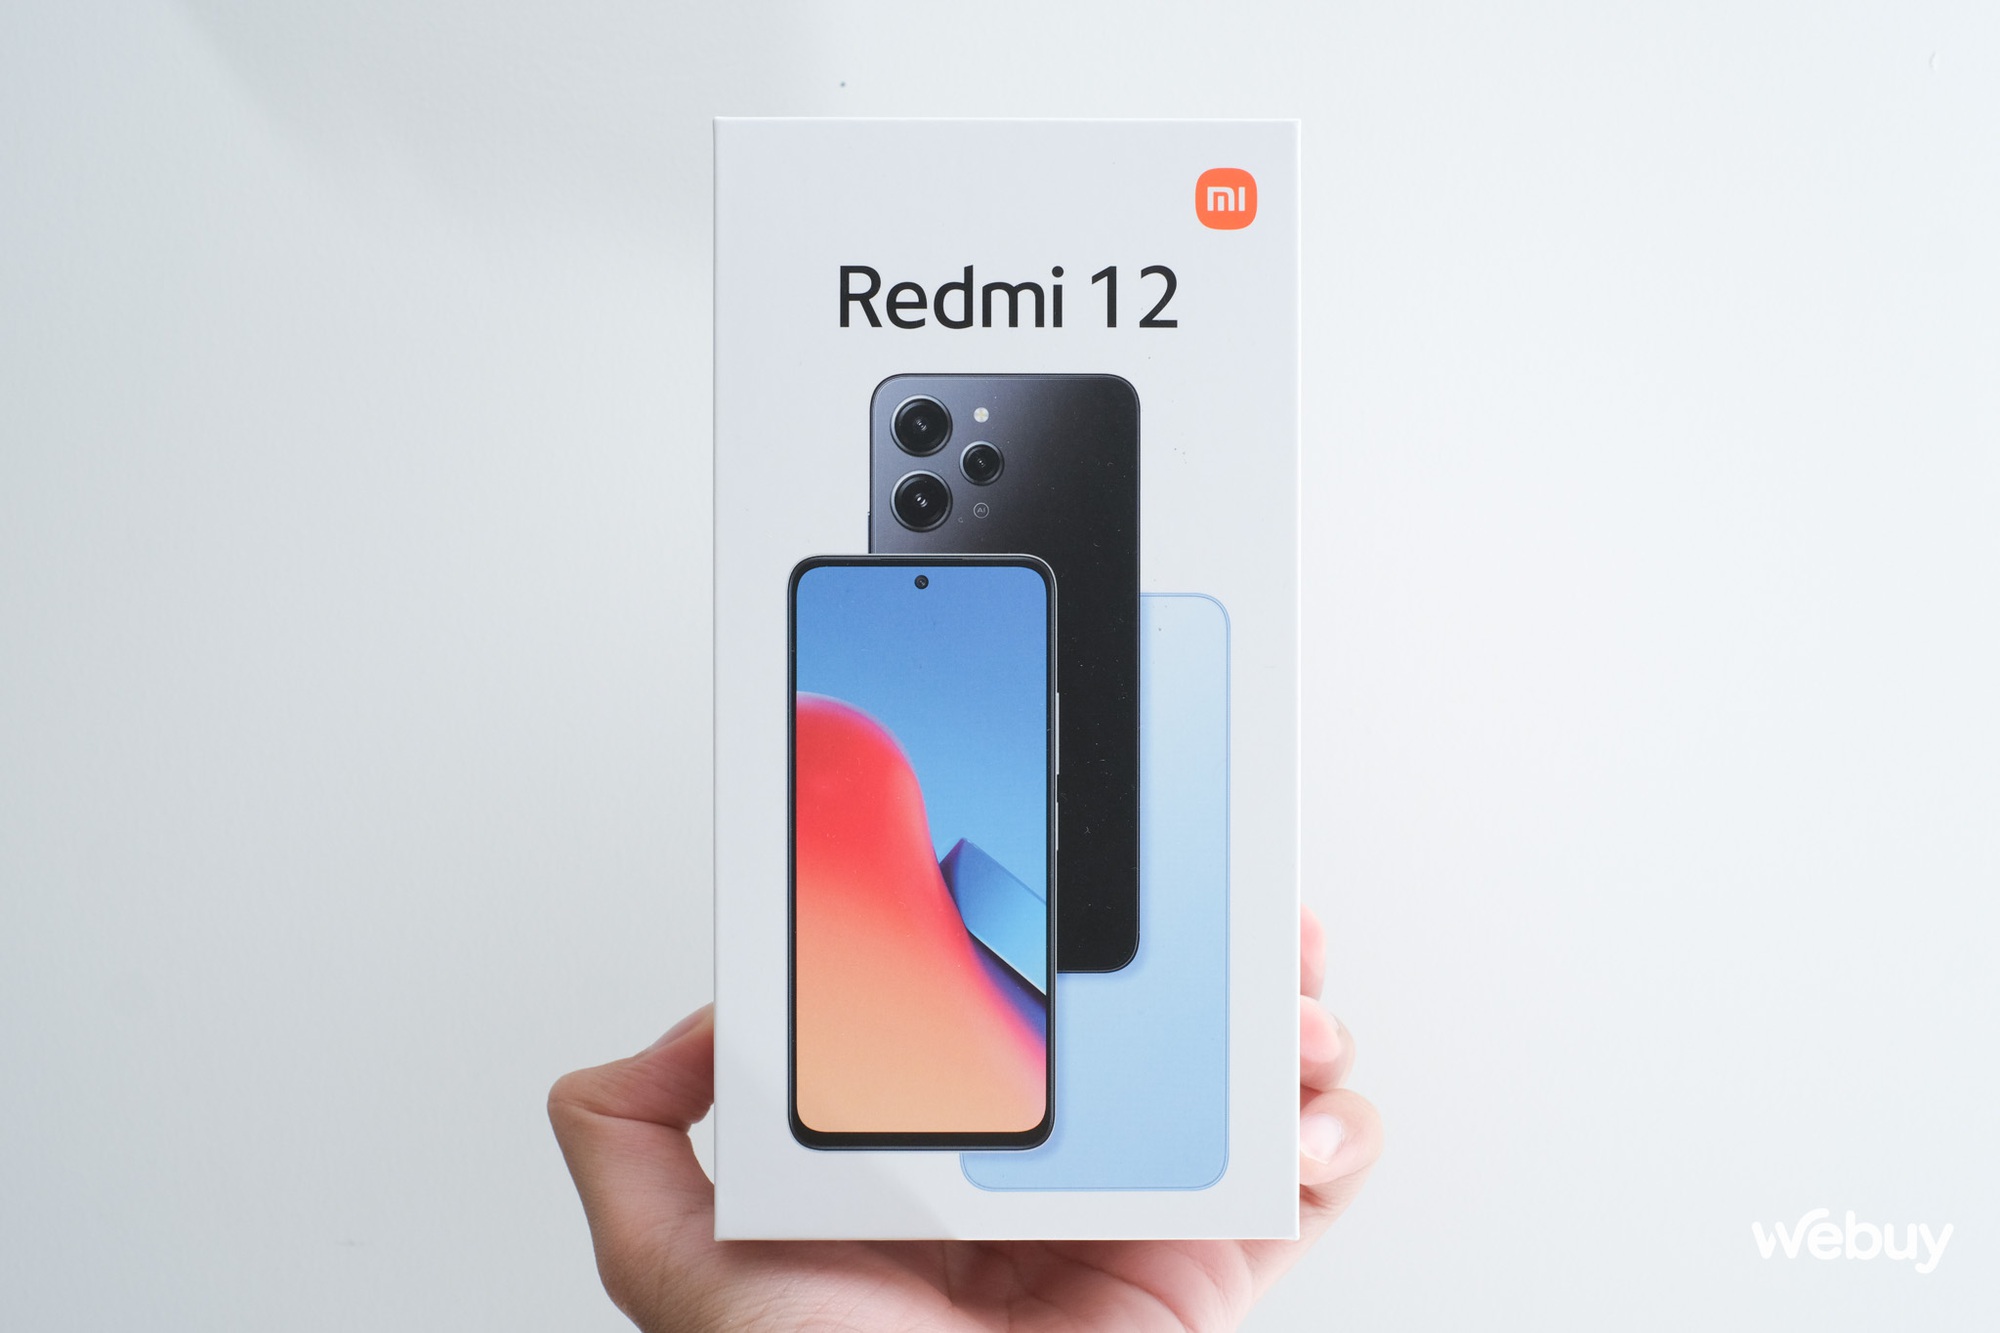 Đánh giá Redmi 12: Smartphone giá 4 triệu đồng không có đối thủ! - Ảnh 1.